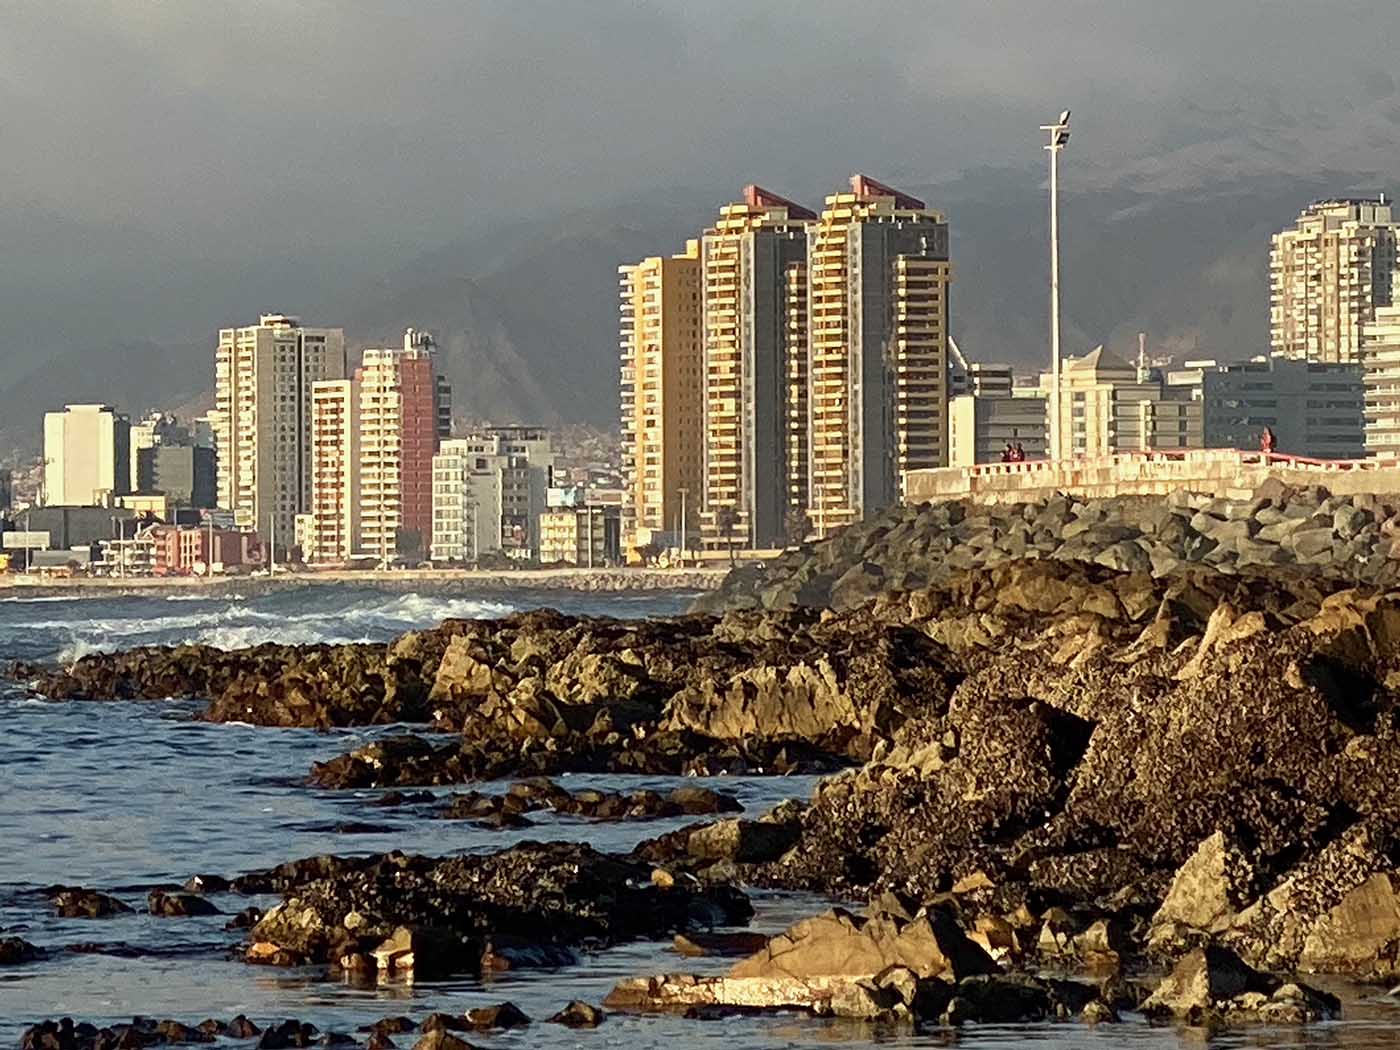 The shoreline in Antofagasta